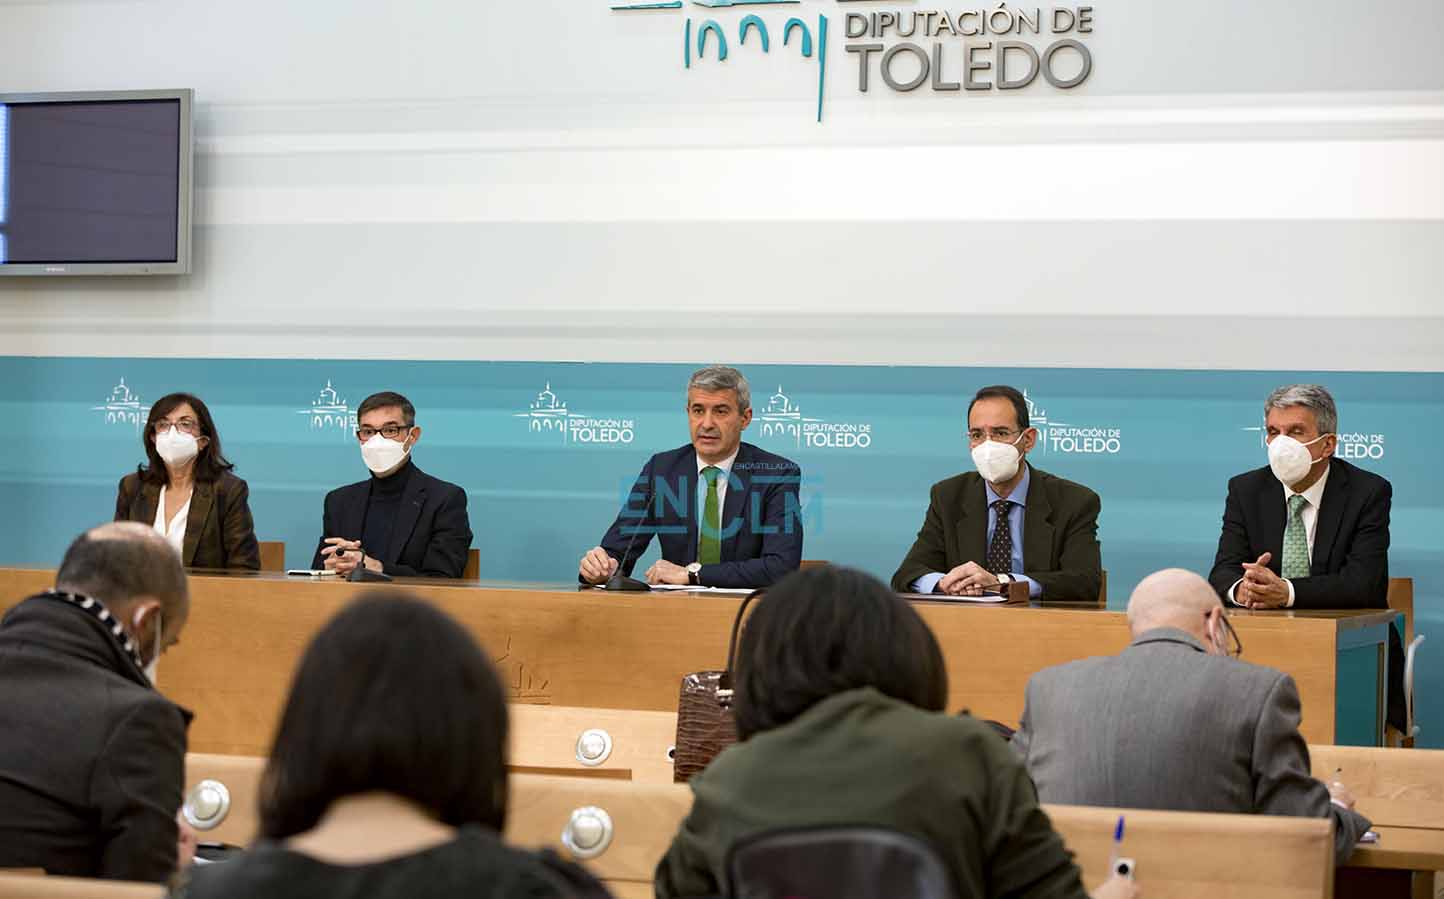 Álvaro Gutiérrez, en el centro de la imagen, presidente de la Diputación de Toledo. Foto: Rebeca Arango.